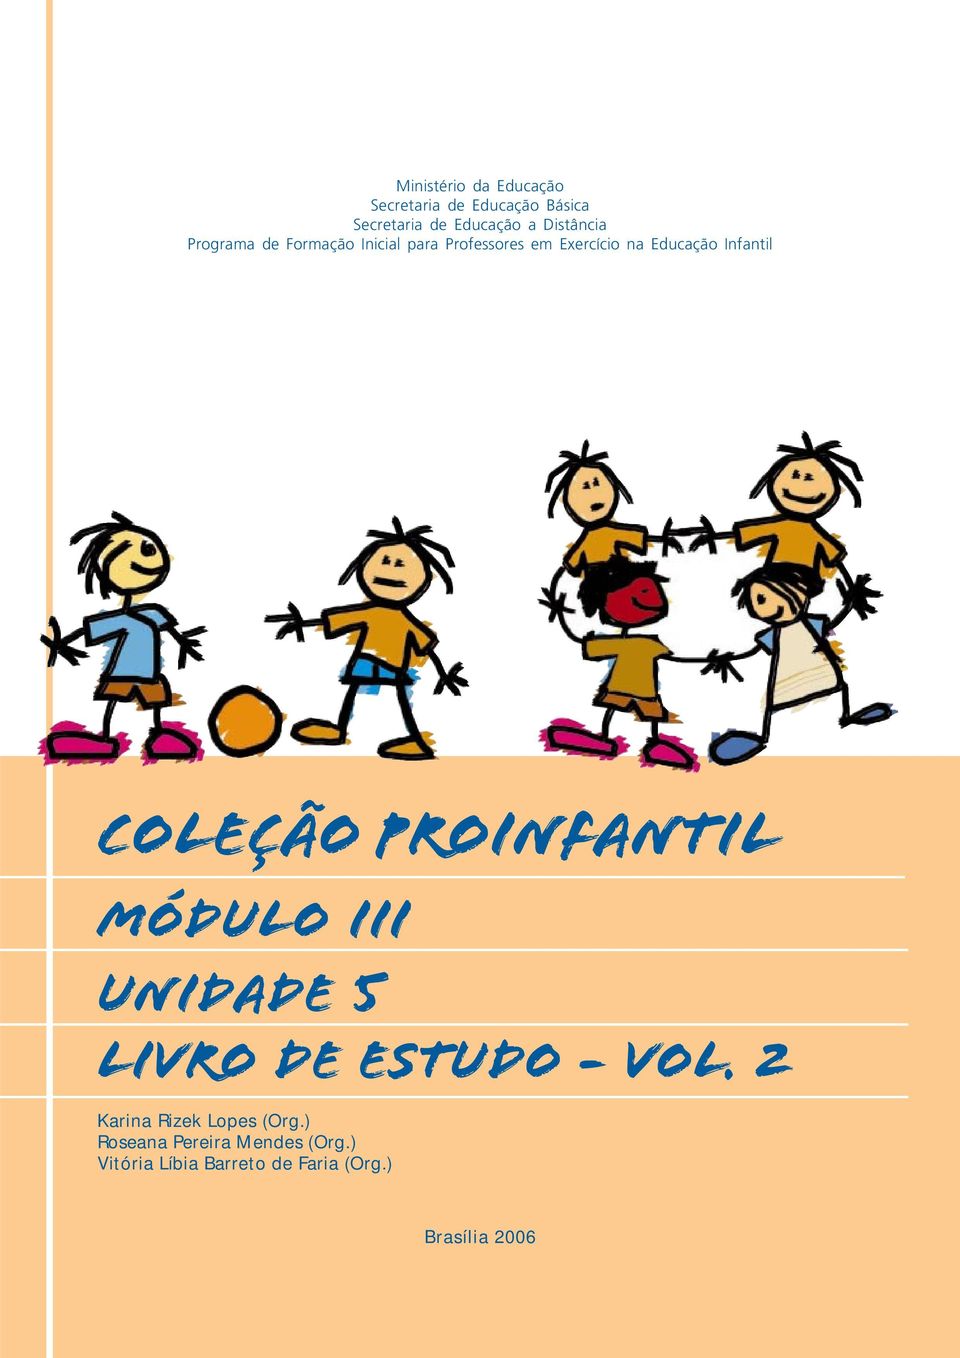 Infantil COLEÇÃO PROINFANTIL MÓDULO III unidade 5 livro de estudo - vol.